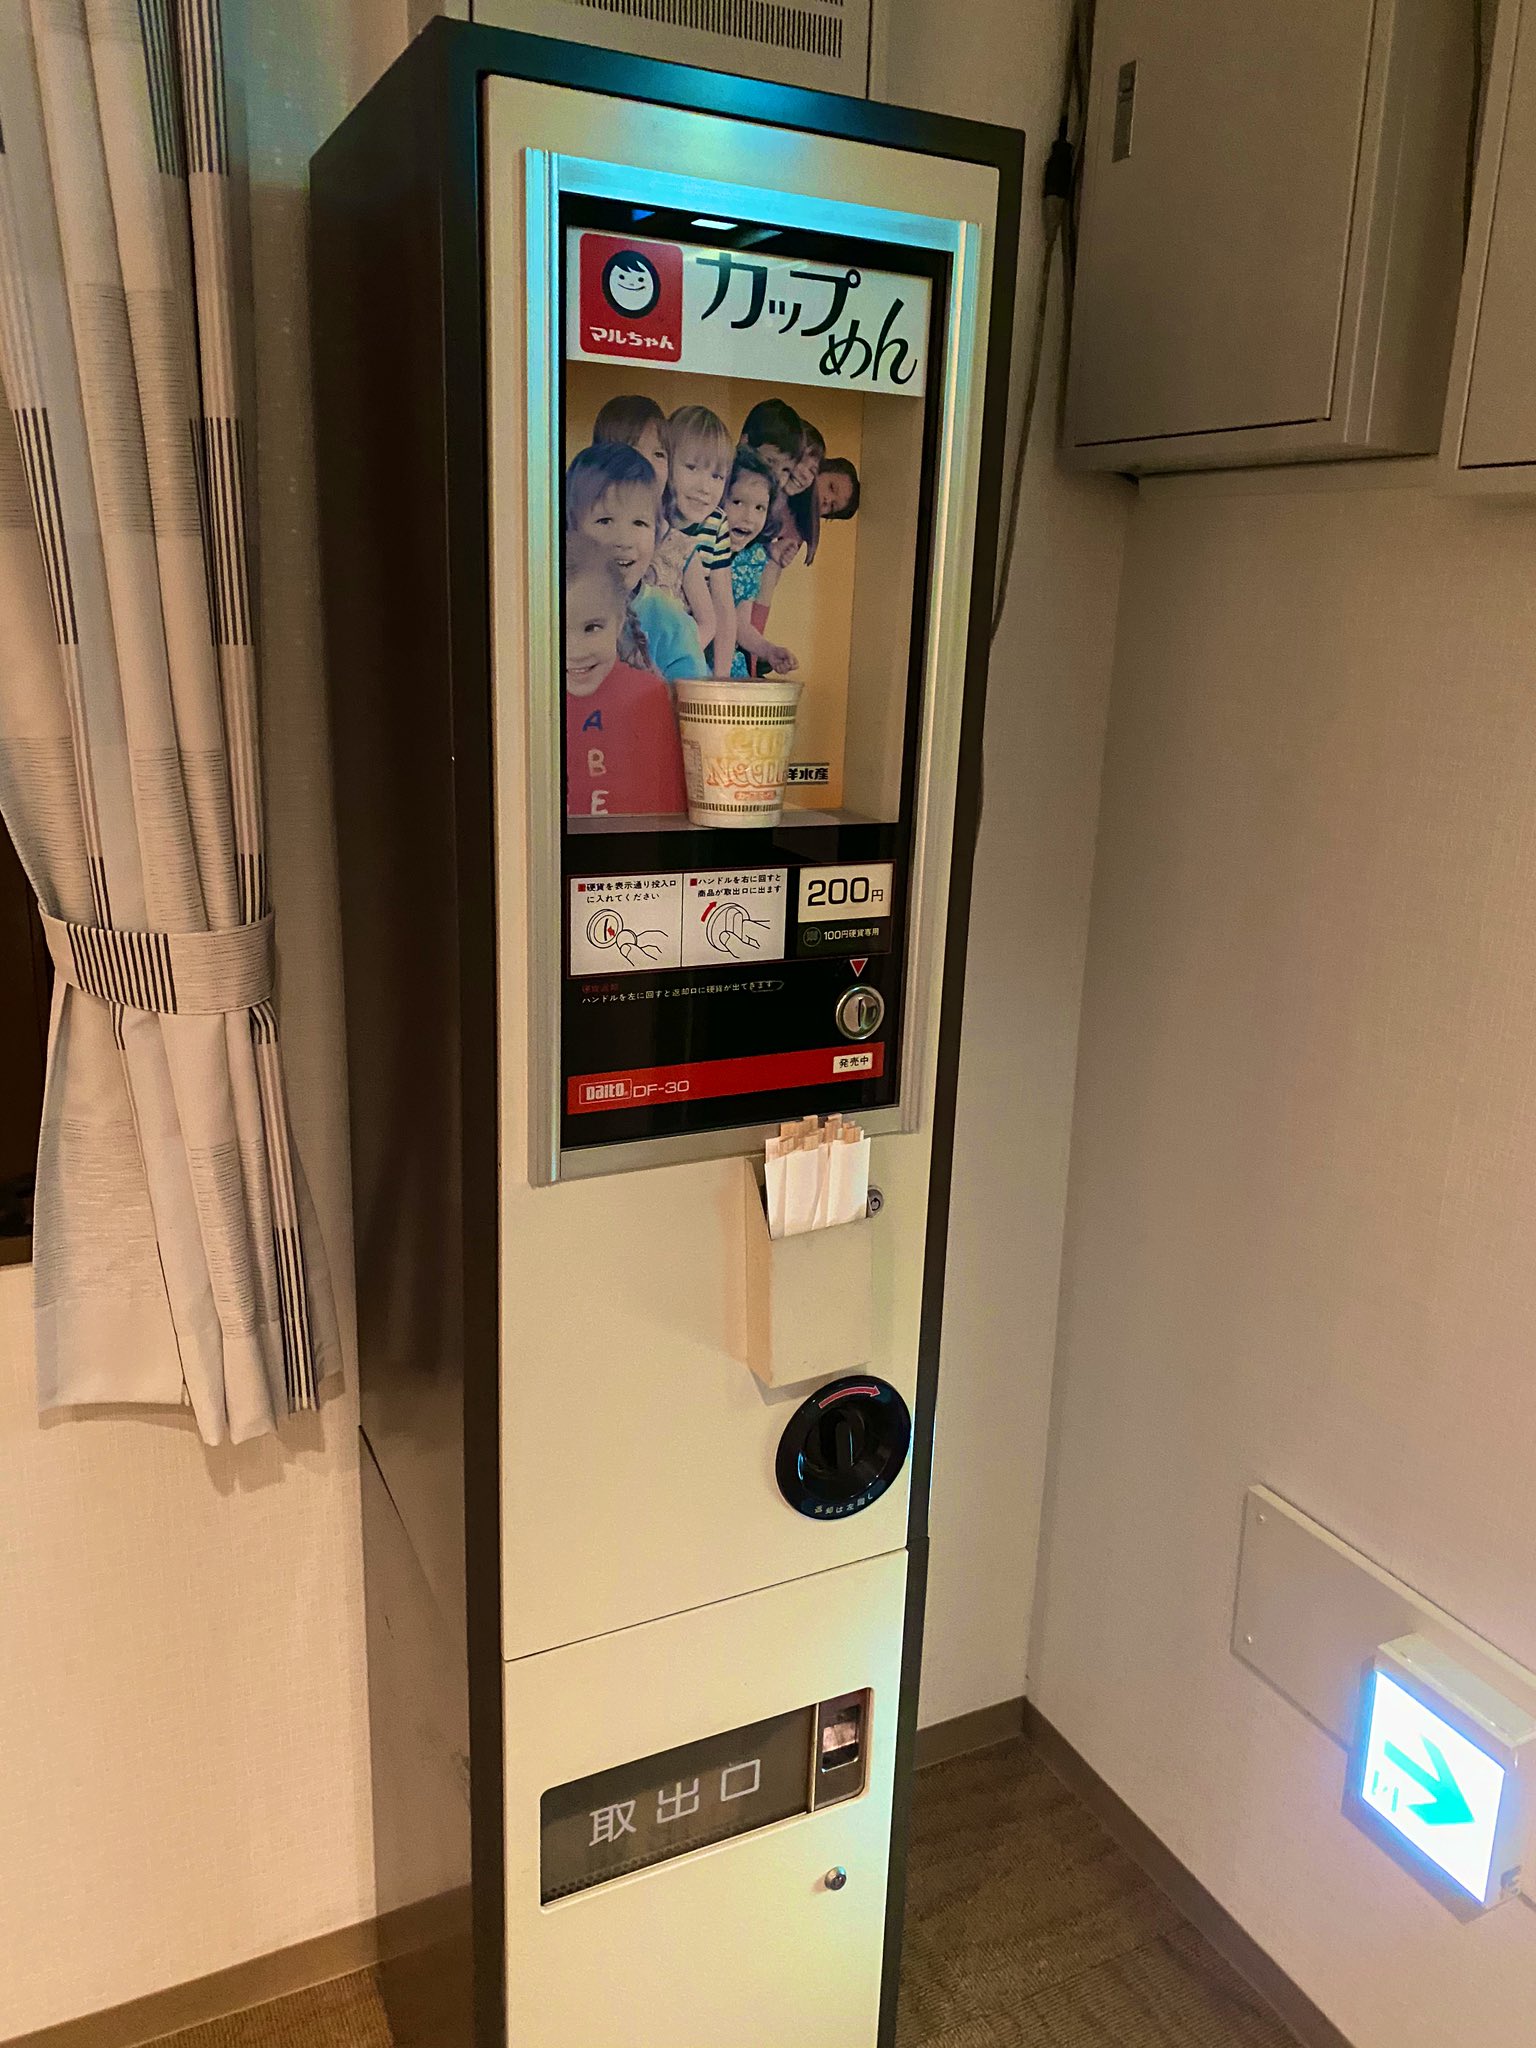 このタイプははじめて見る 淡路島のホテルに設置されたレアすぎる カップ麺自販機 が話題に えのげ